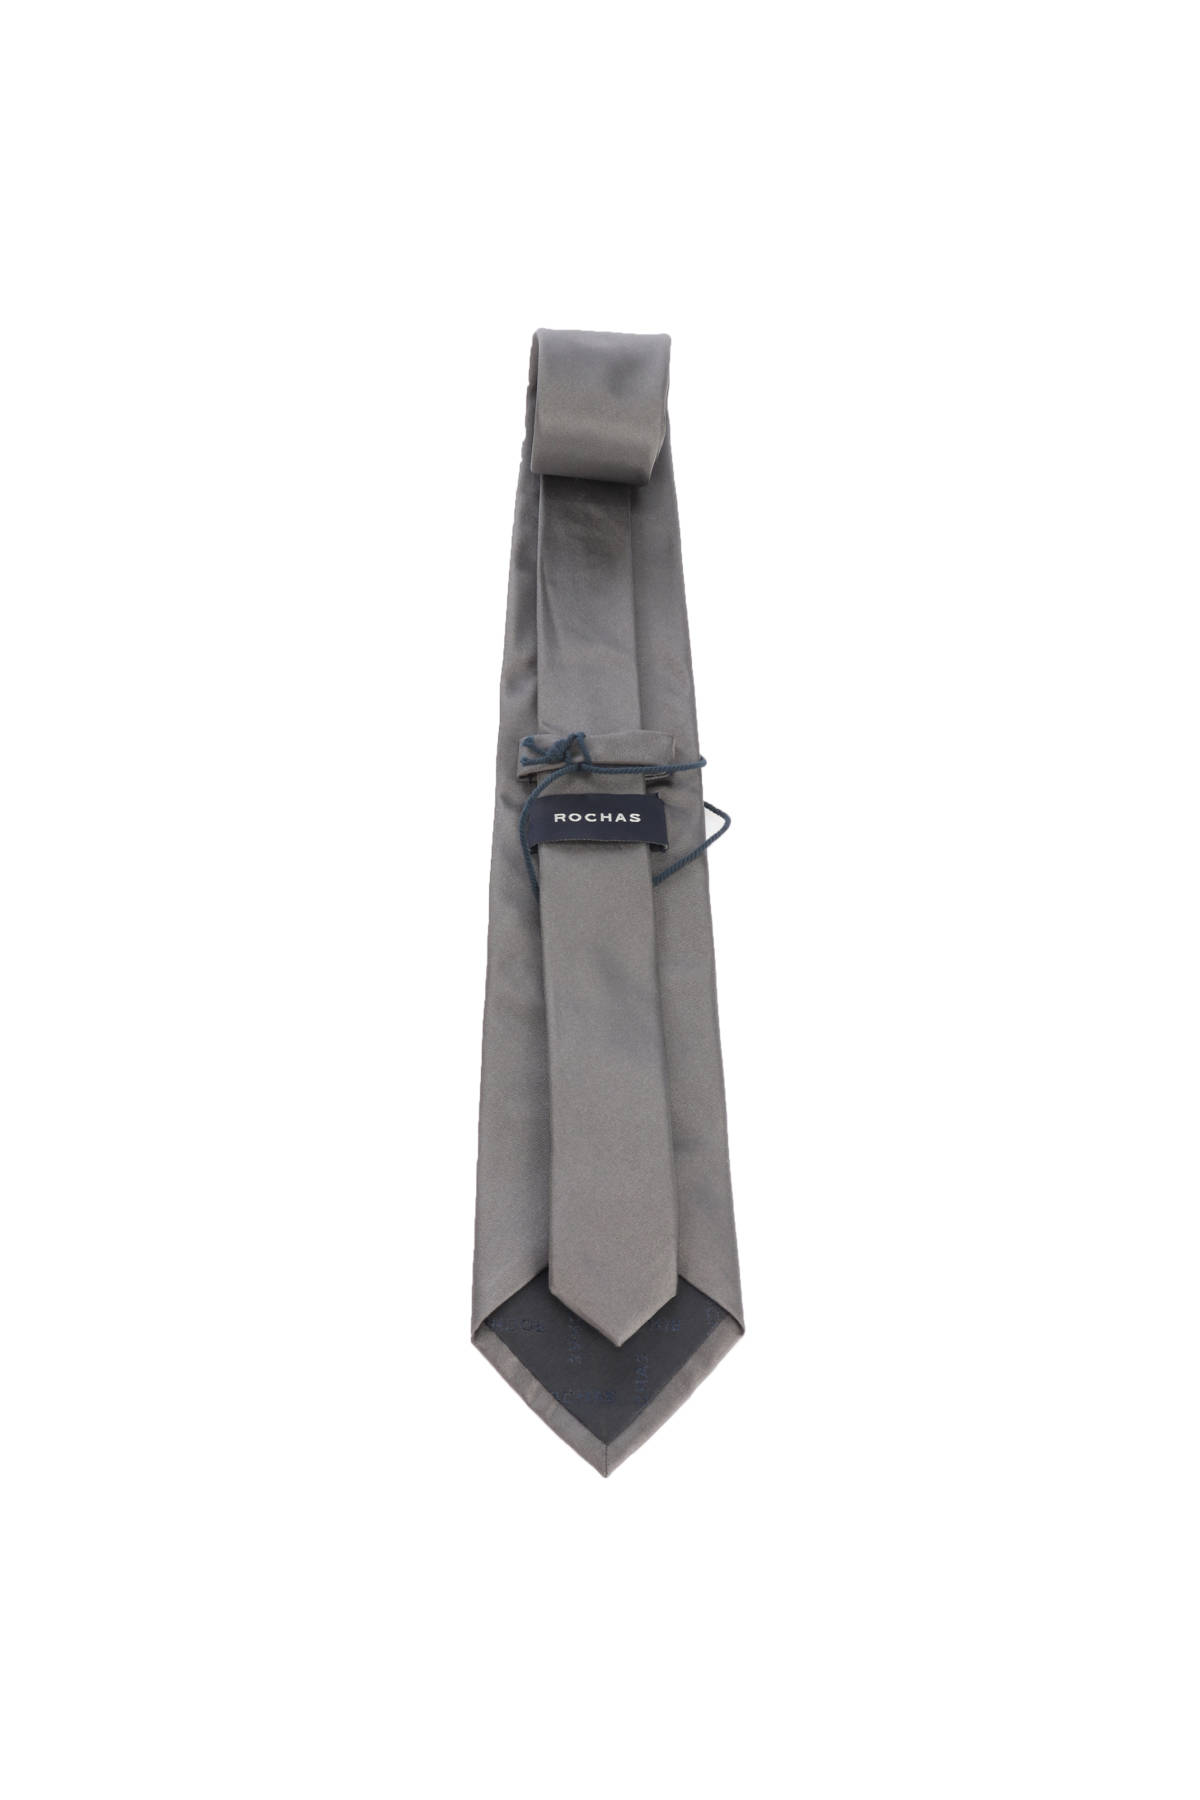 Вратовръзка AZZARO2